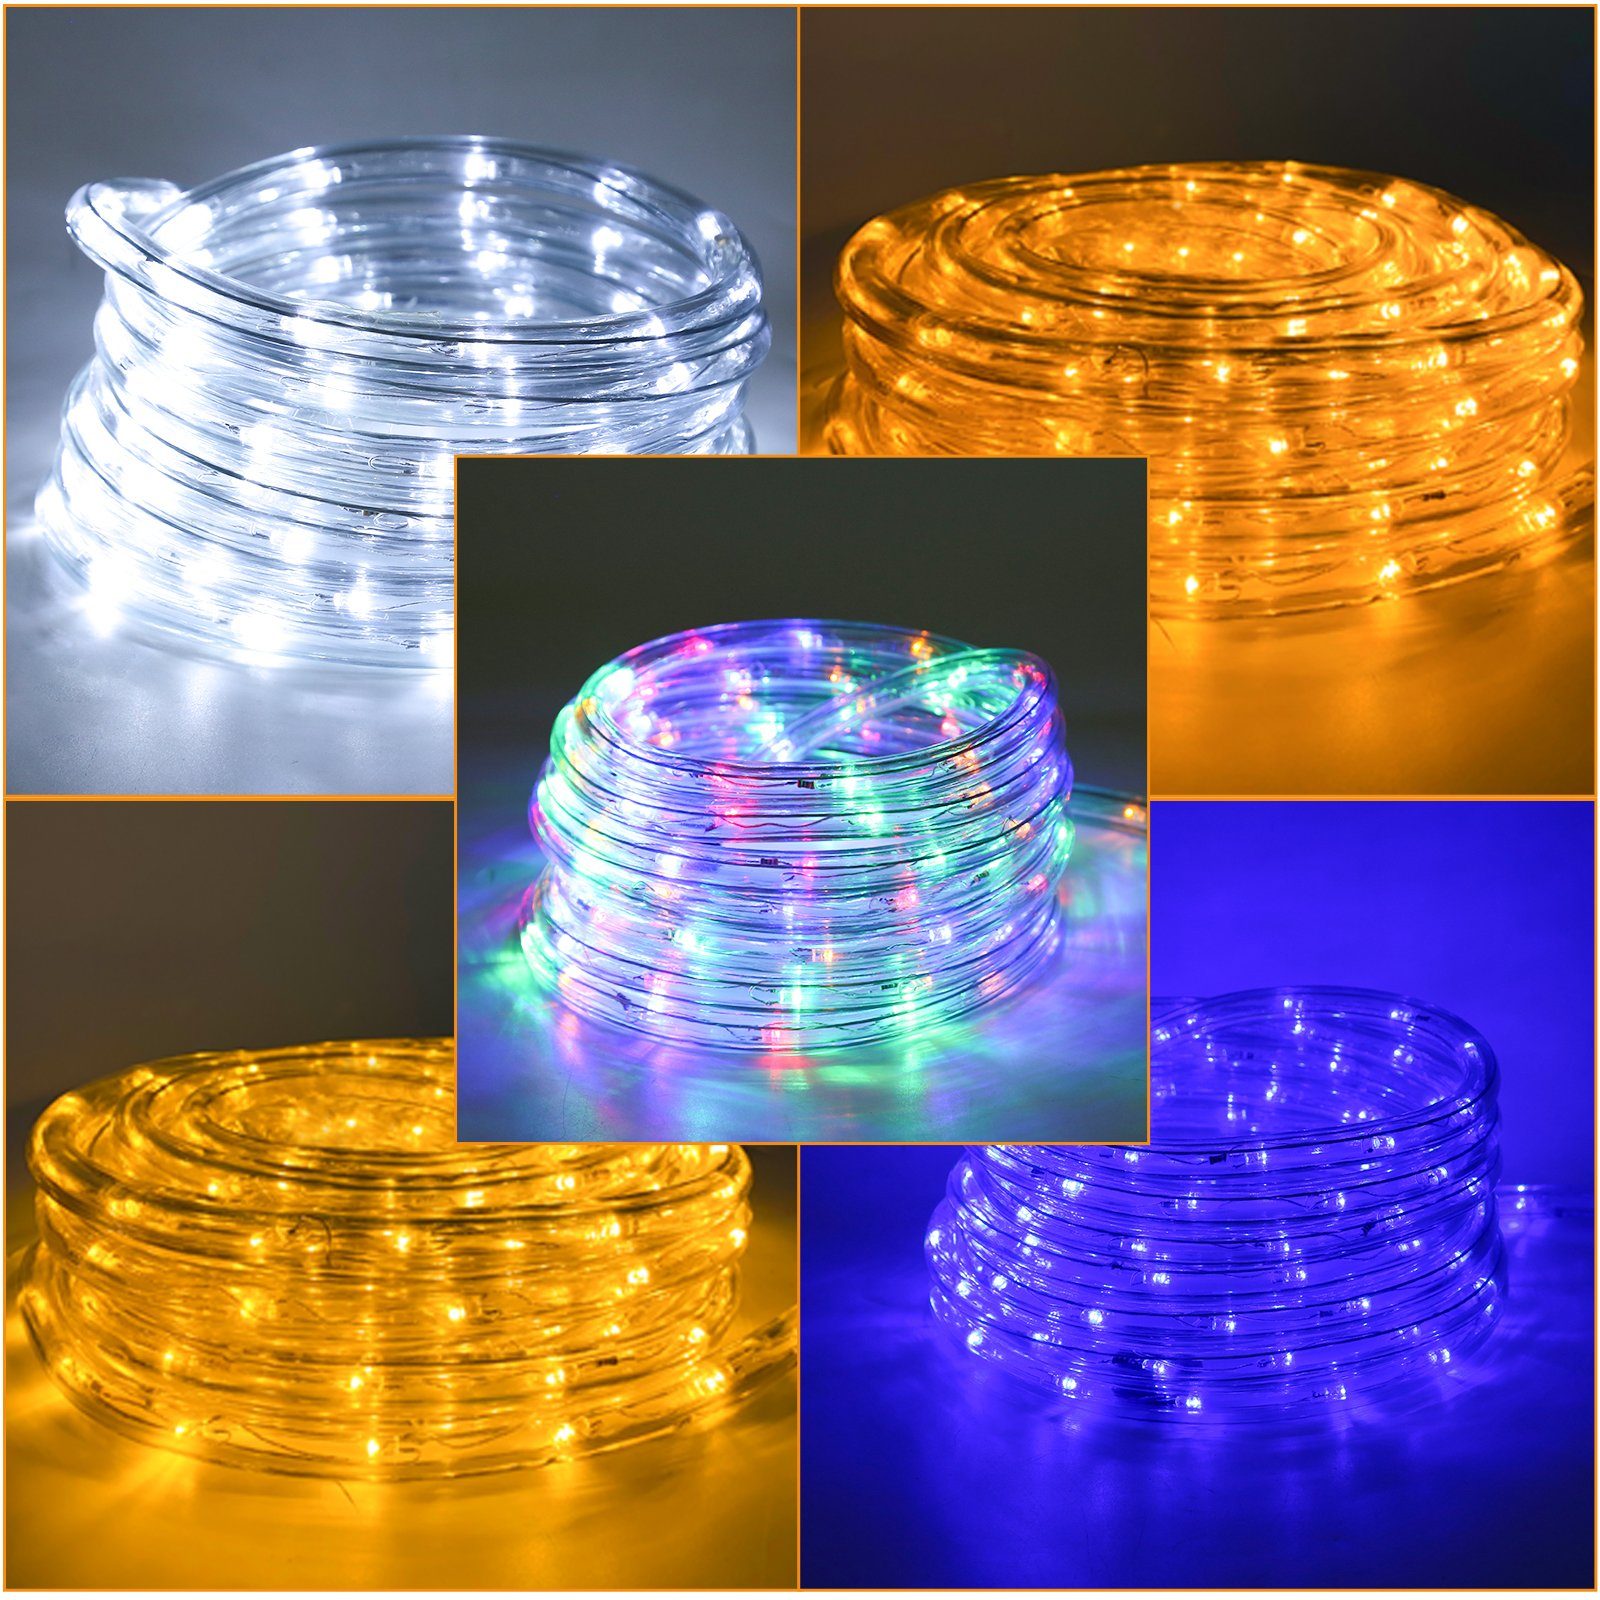 LED-Lichterkette LED Lichterschlauch Lichterkette Clanmacy Weiß Wasserdicht 40m Lichtschlauch